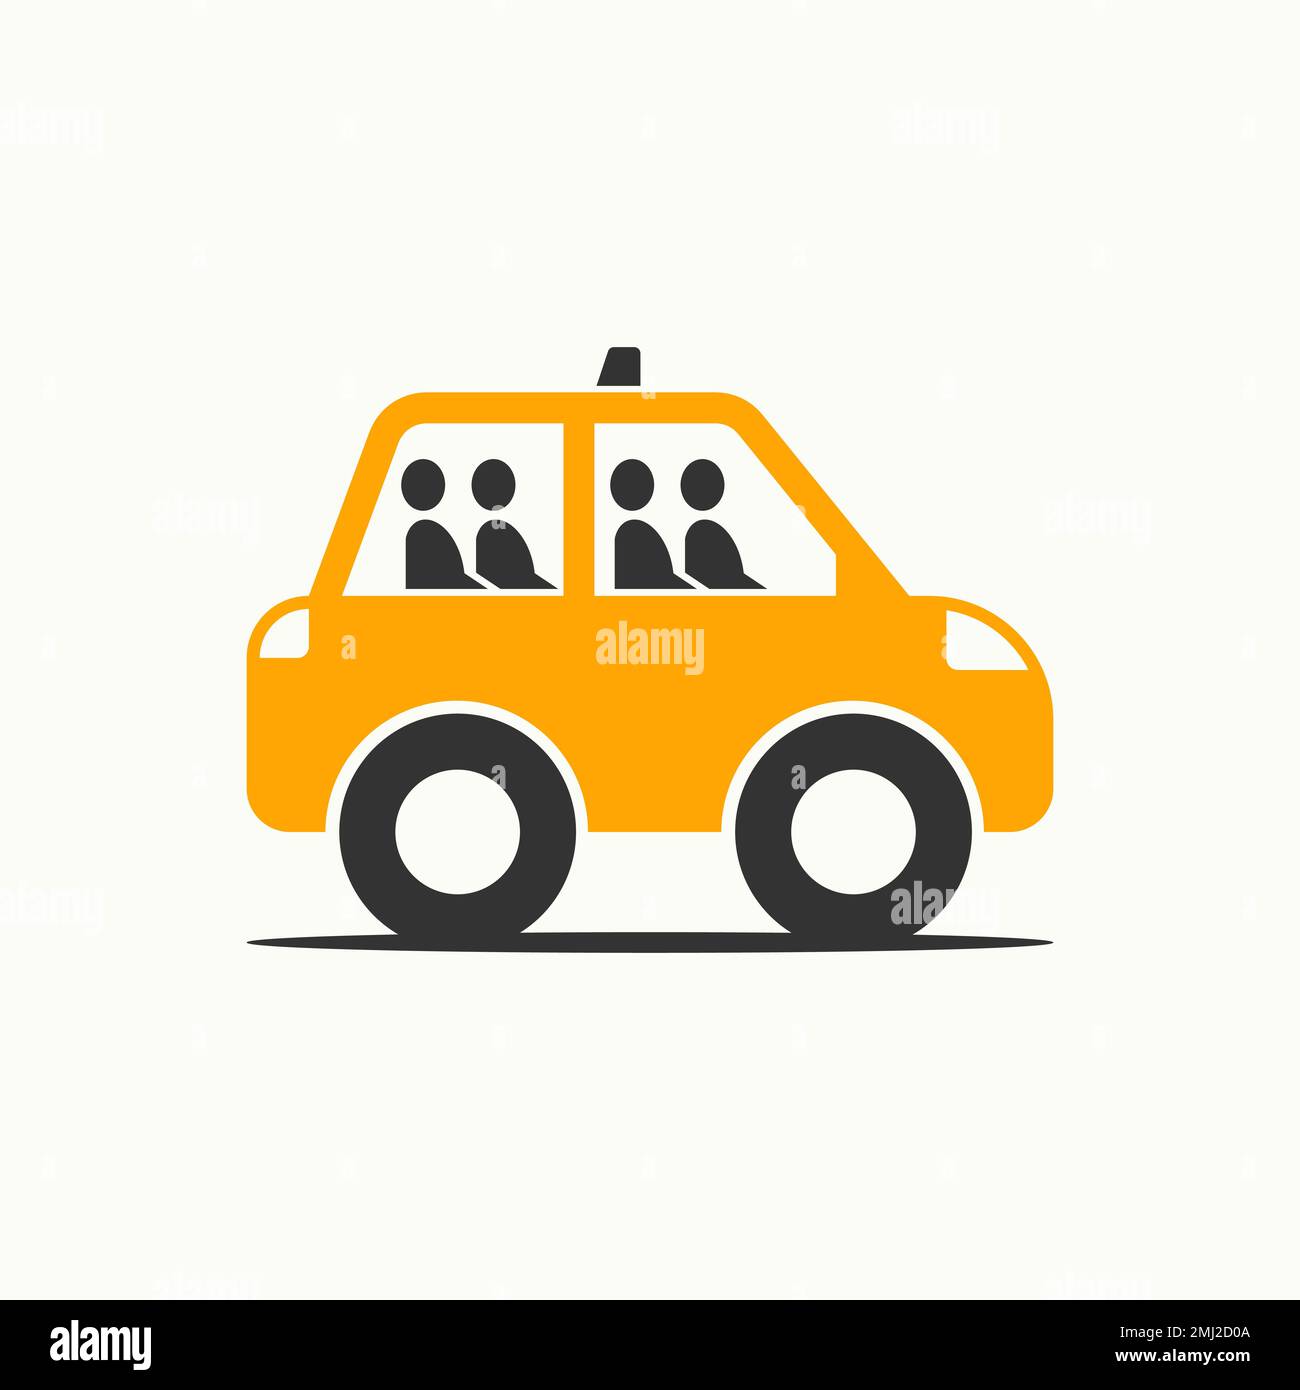 Simple y único mini pequeño coche de taxi con dos o cuatro pasajeros icono gráfico logotipo diseño concepto abstracto vector stock transporte o móvil Ilustración del Vector